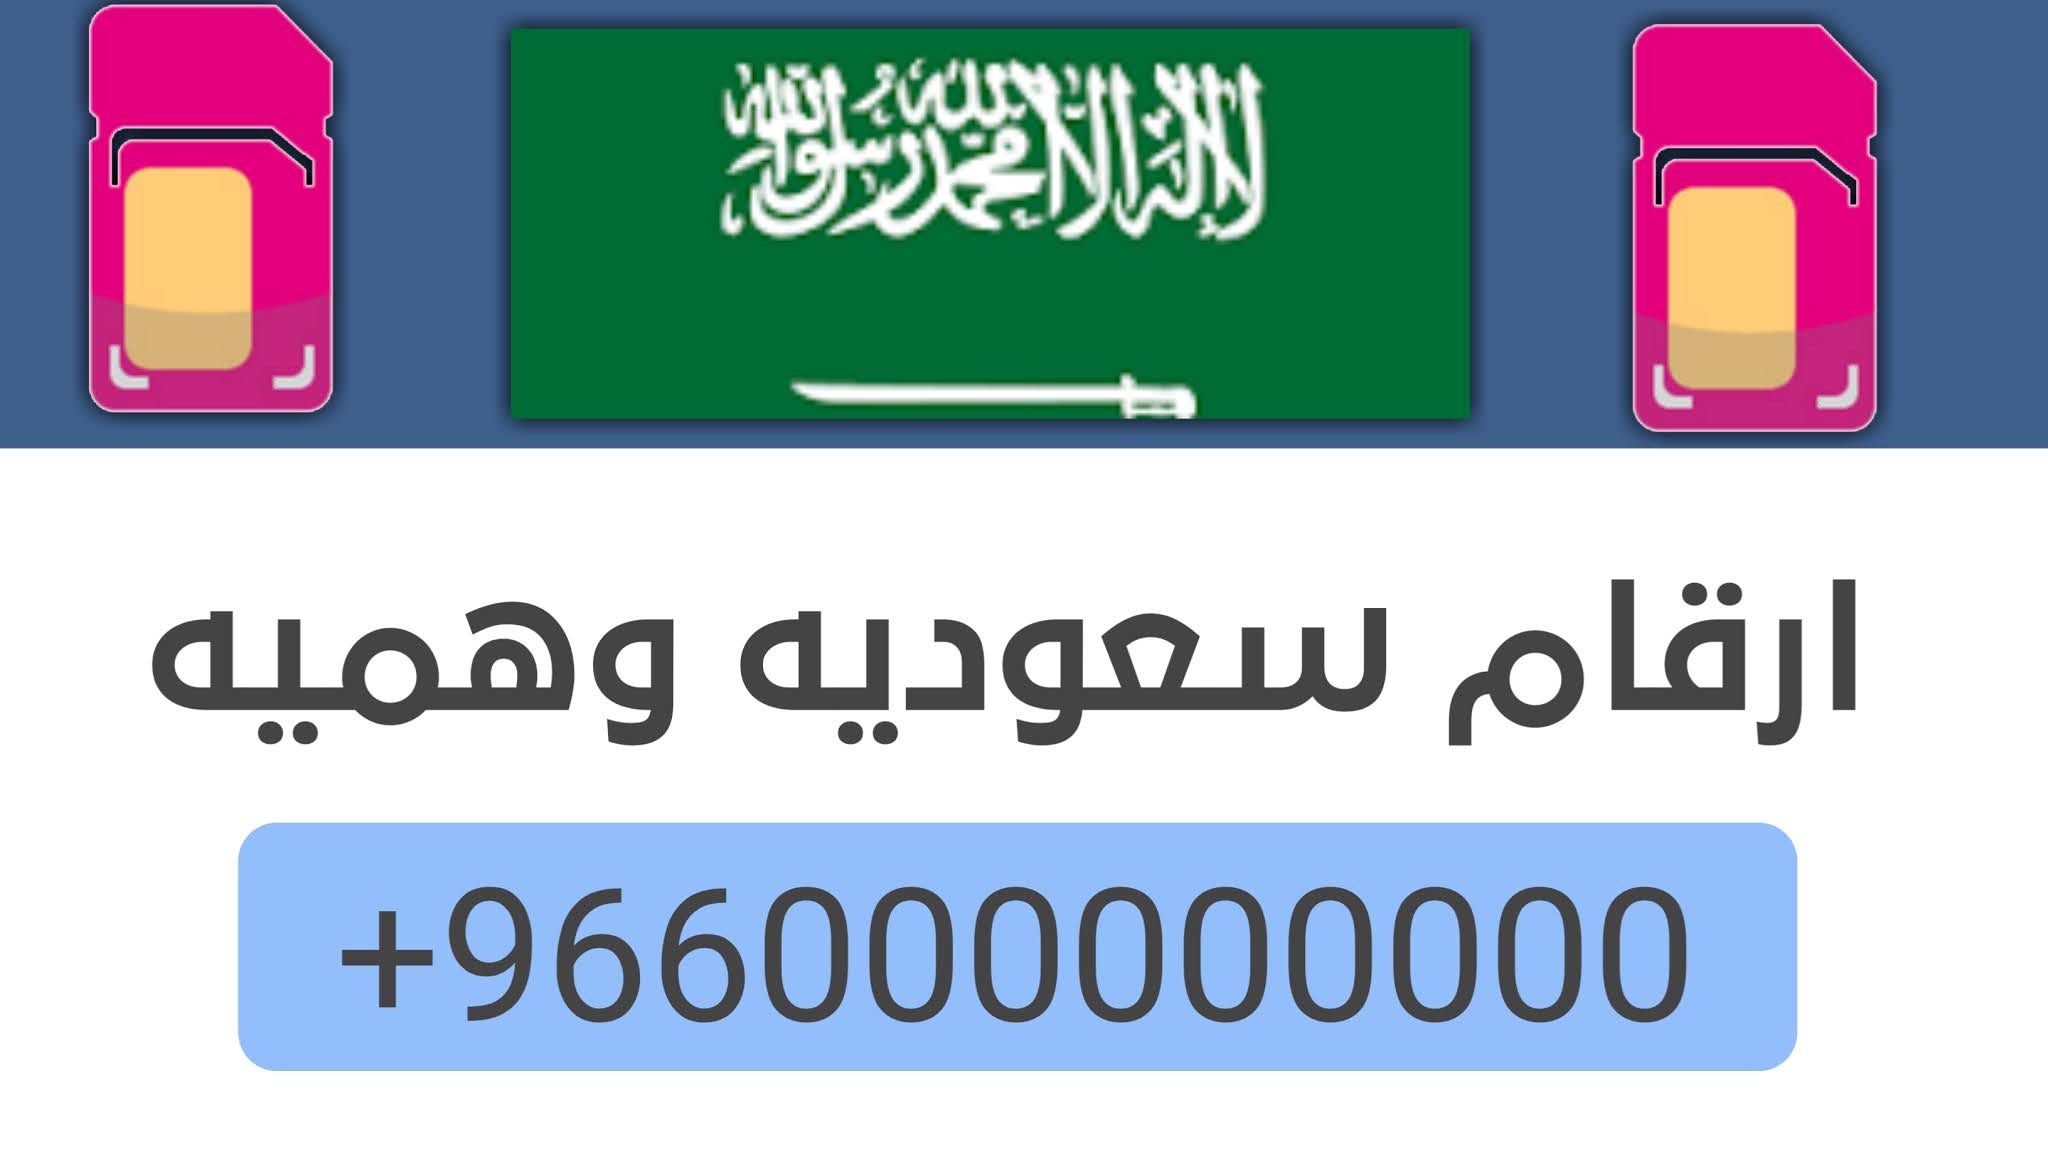 ارقام شباب سعوديين للواتس